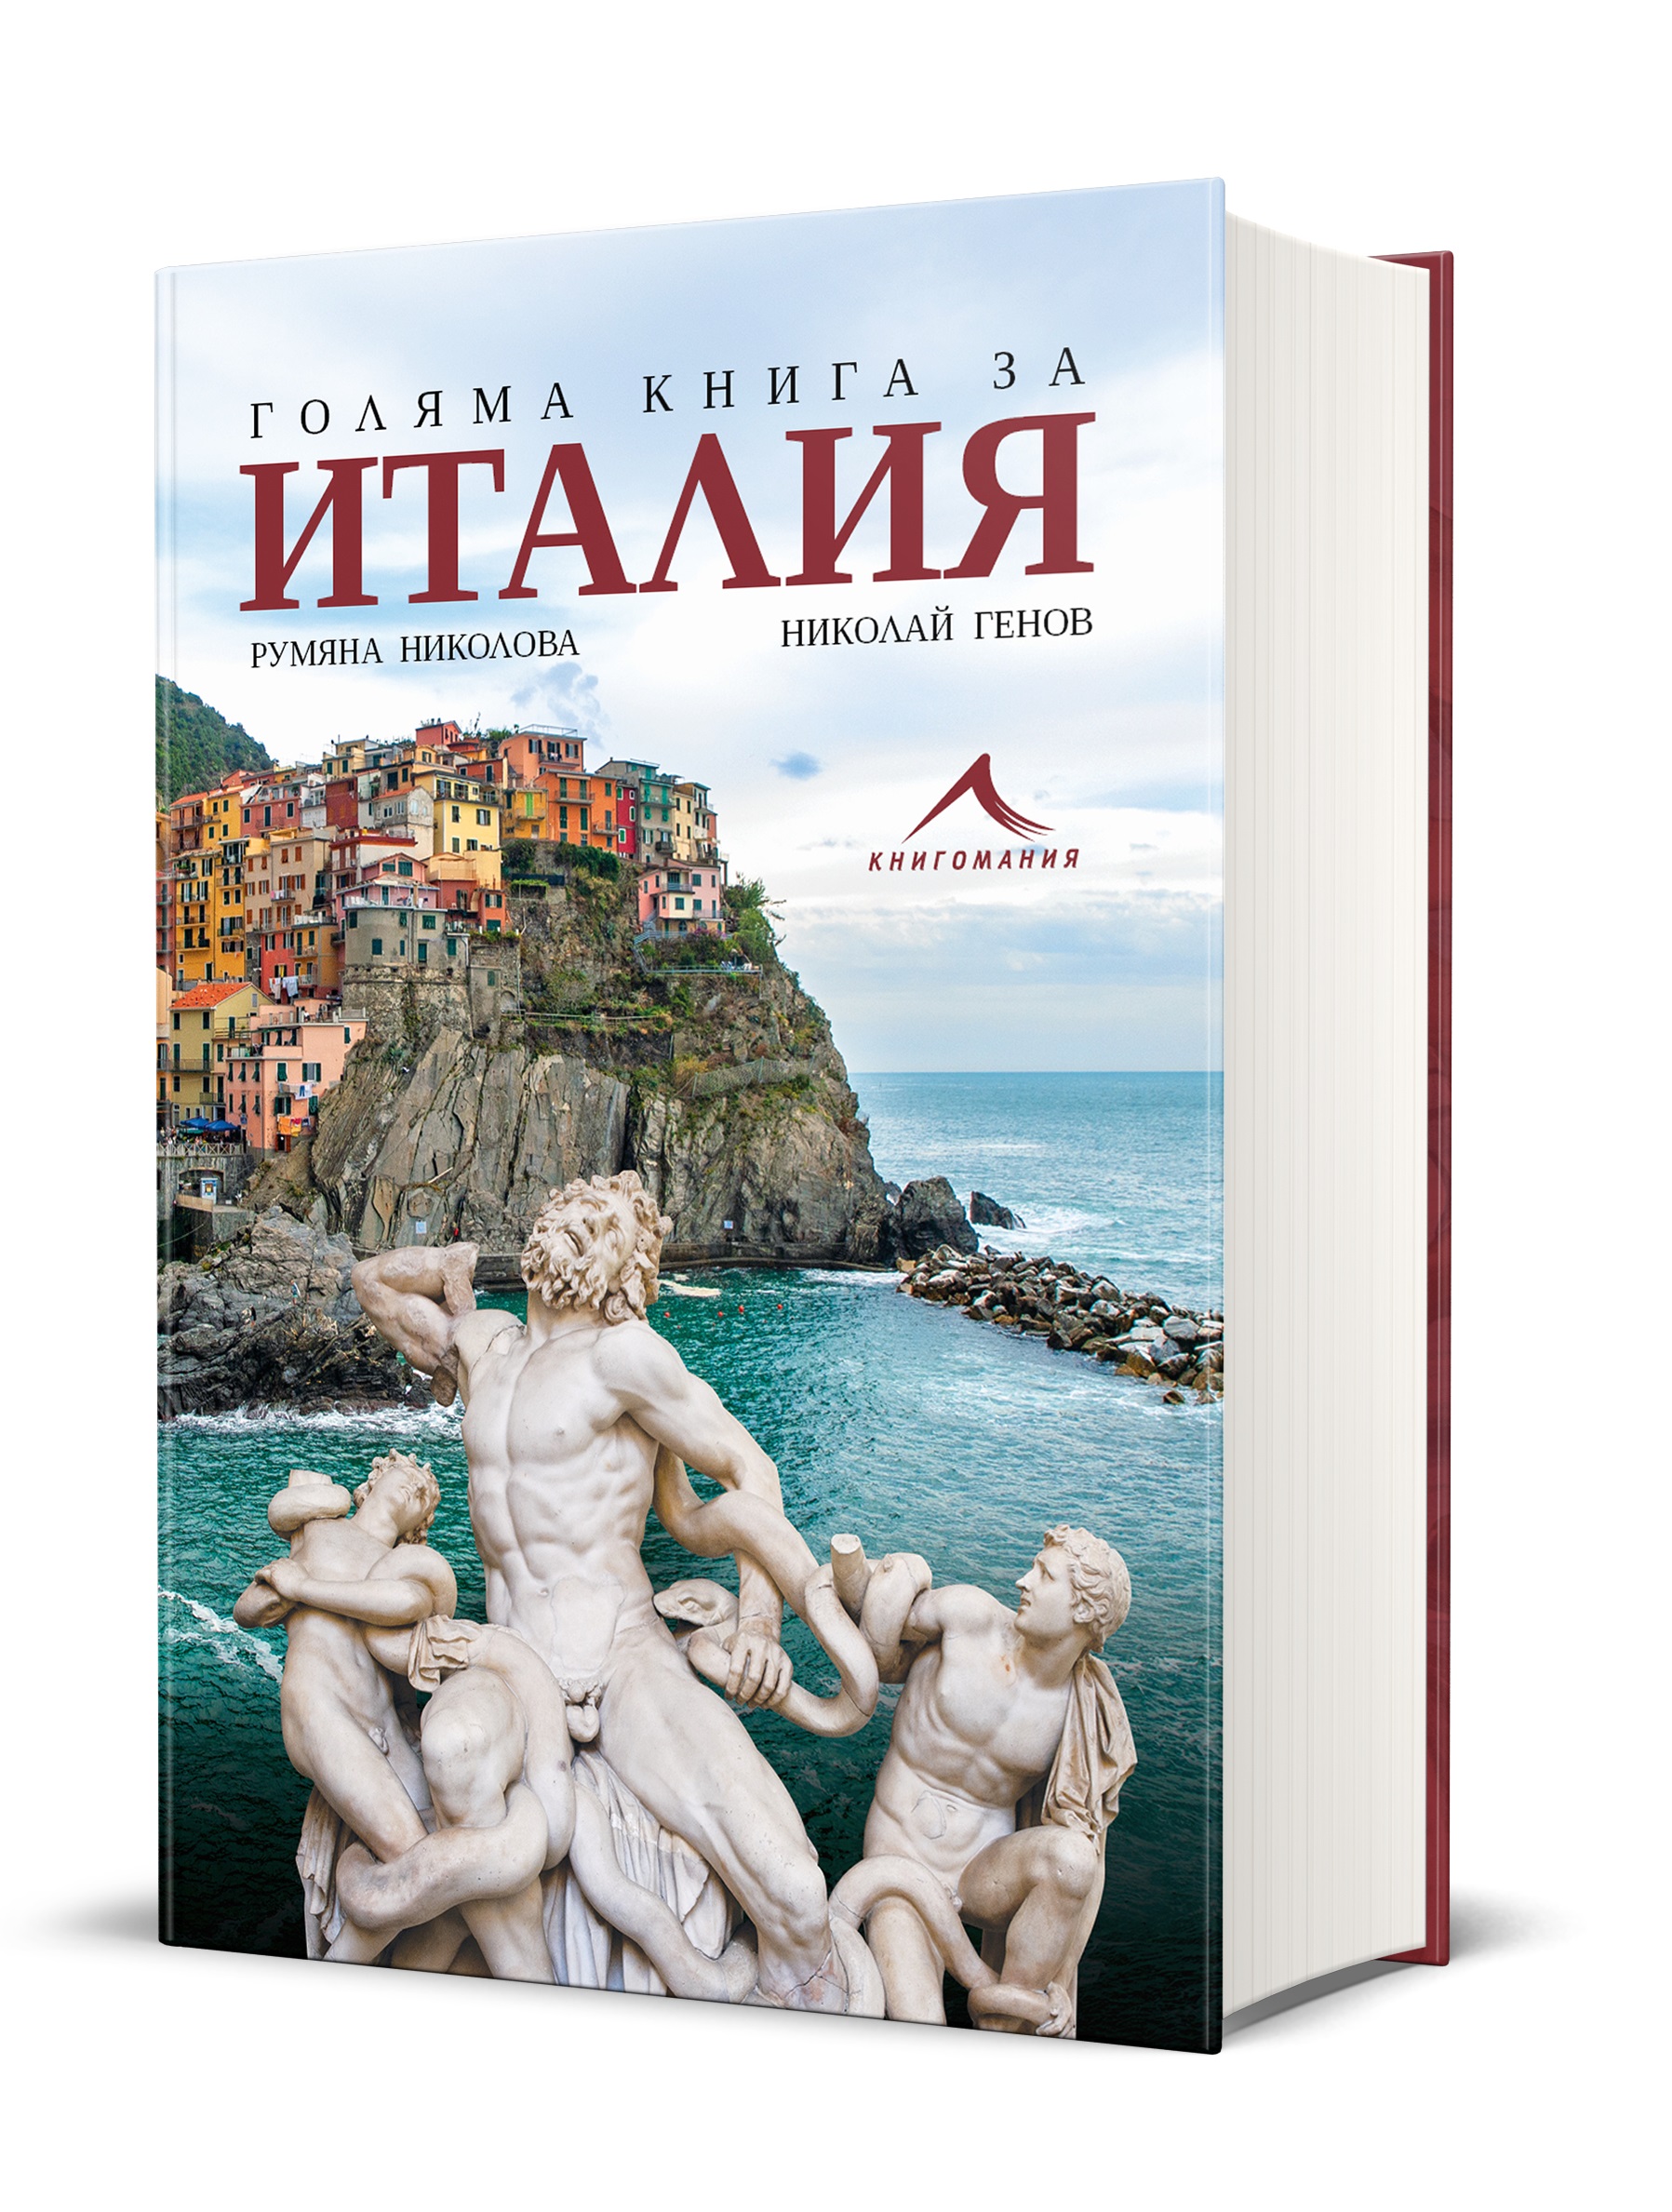 Голяма енциклопедия за Италия от български автори излиза за първи път у нас